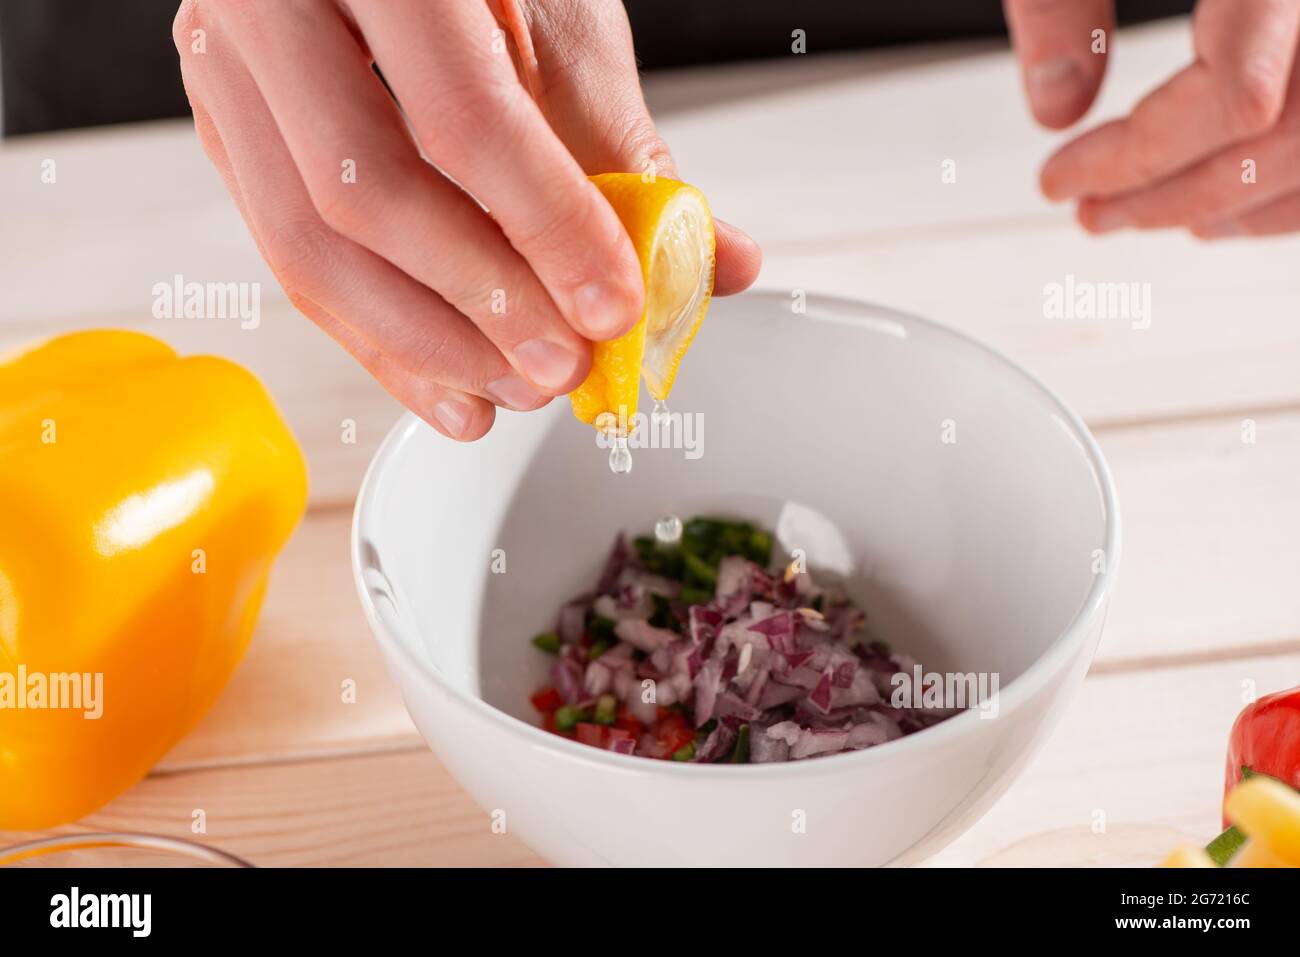 Primo piano sulle mani che spremono il succo da una fetta di limone Foto Stock